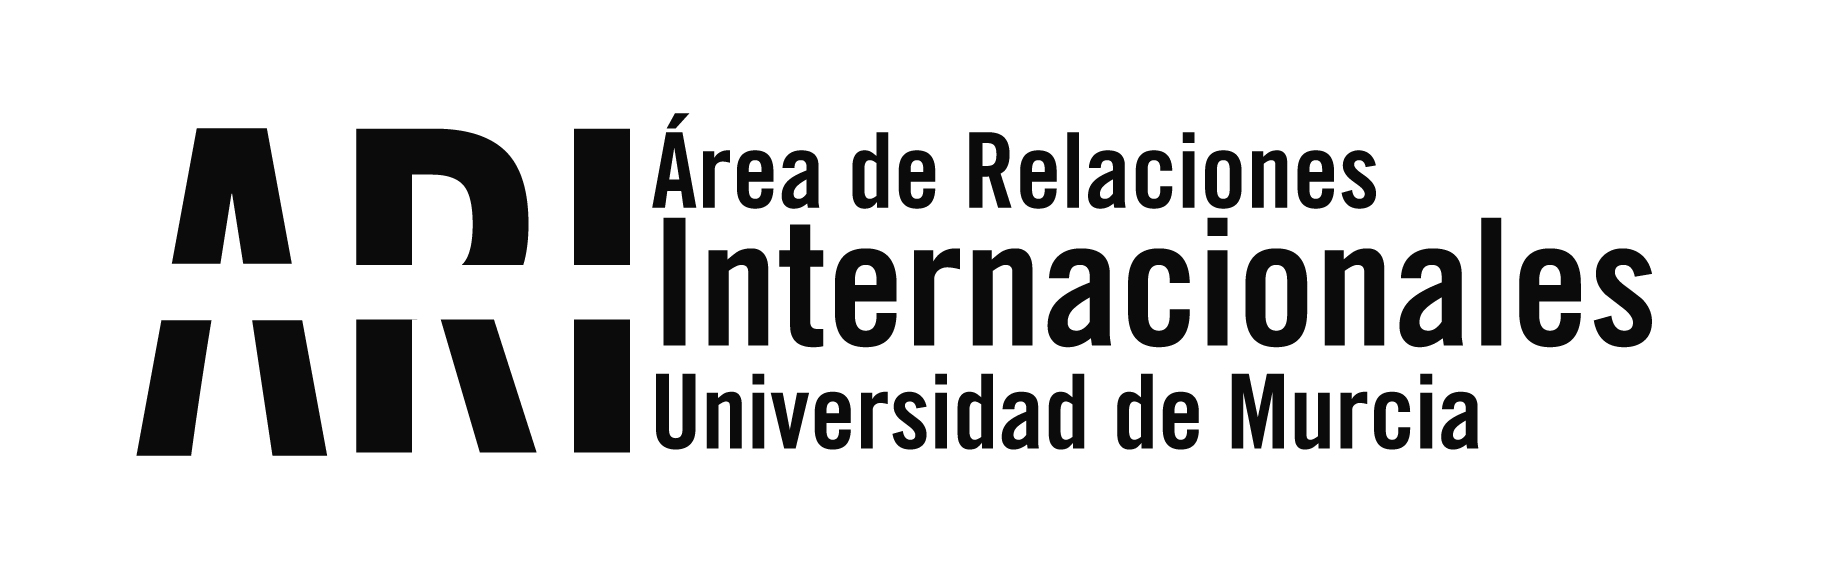 Abierta la convocatoria ILA de Intercambio con Latinoamérica 2022/23 ¡acude a las sesiones informativas! - Área de Relaciones Internacionales